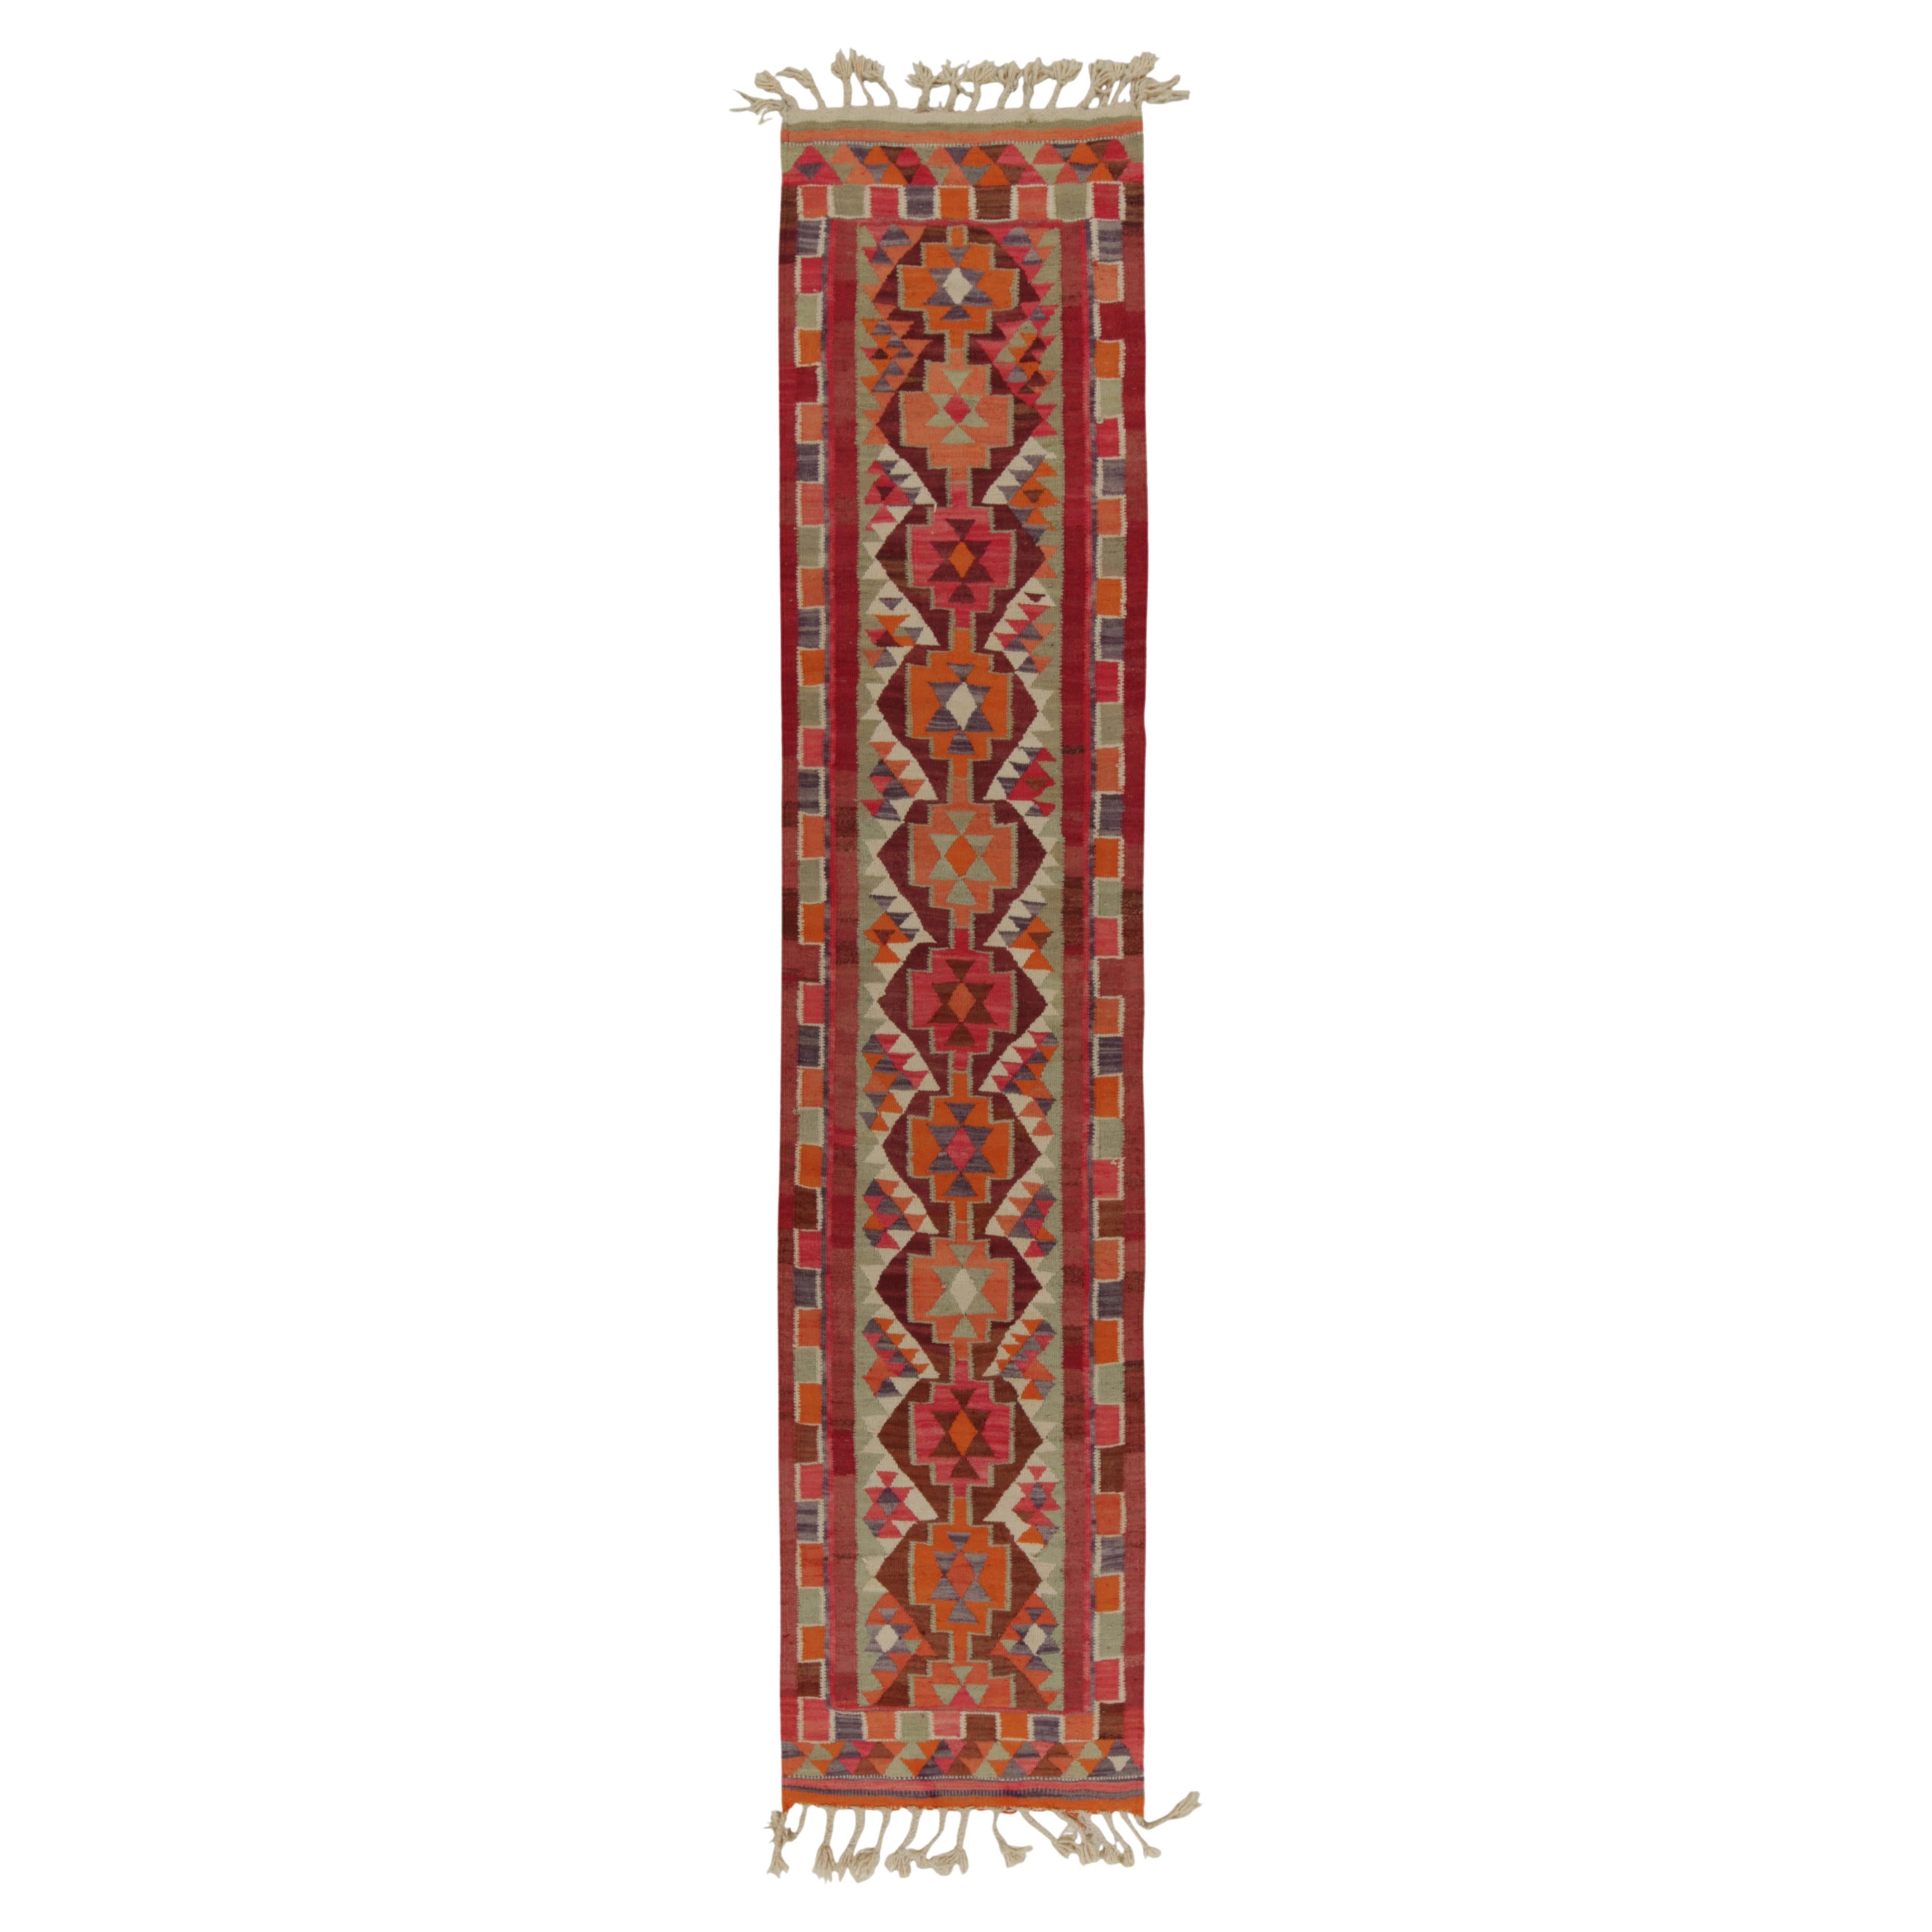 Vintage Tribal Kilim Runner in Red Orange and Geometric Pattern by Rug & Kilim